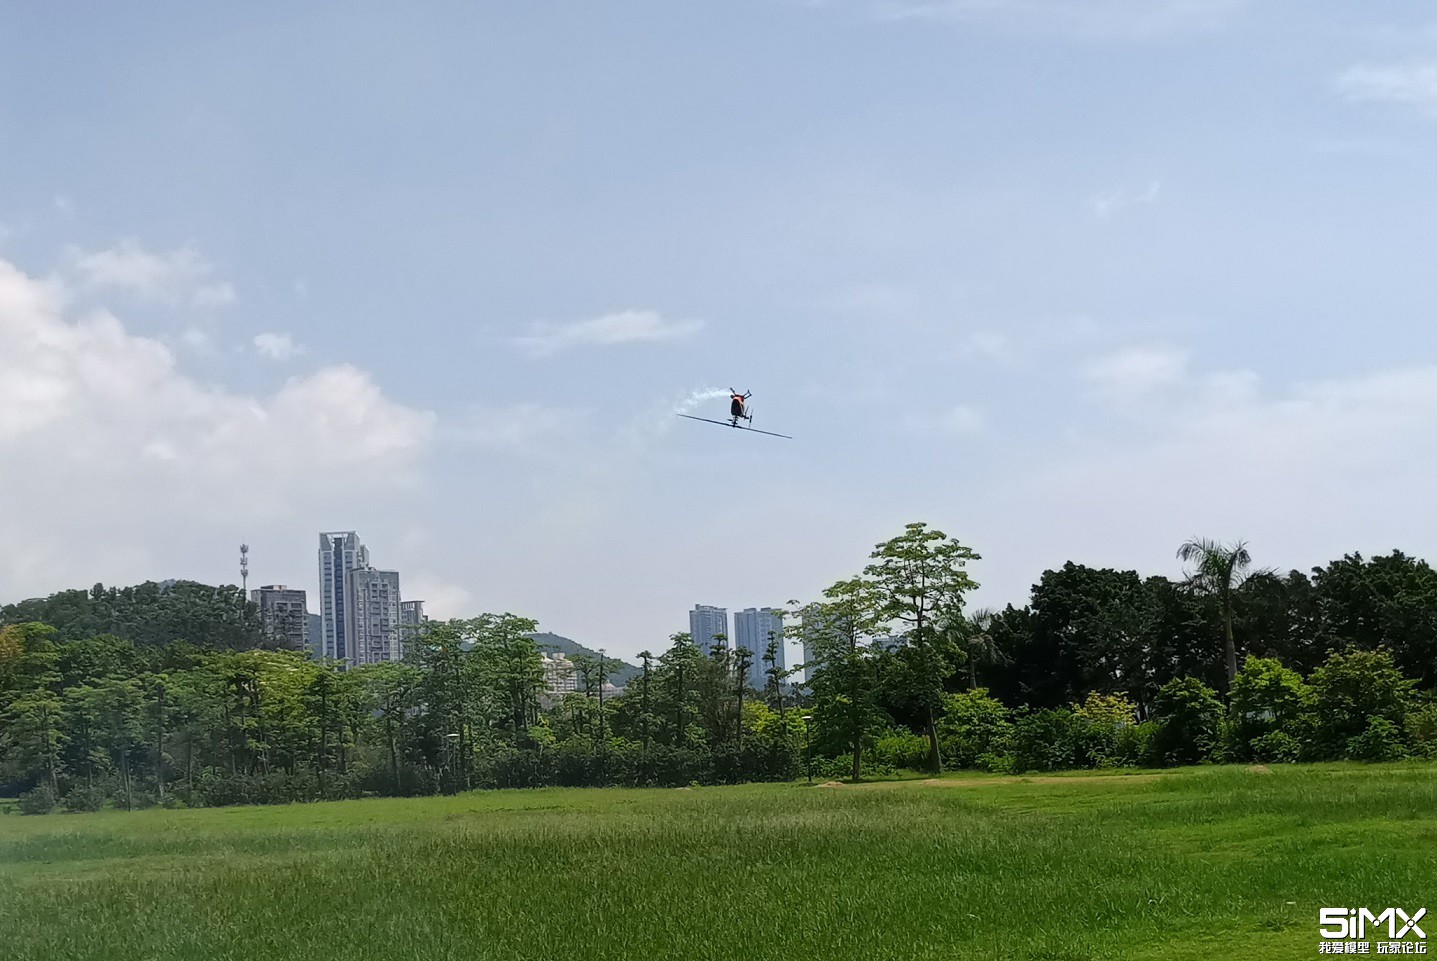 珠海直升机飞行爱好者小聚 直升机 作者:超音速 8693 